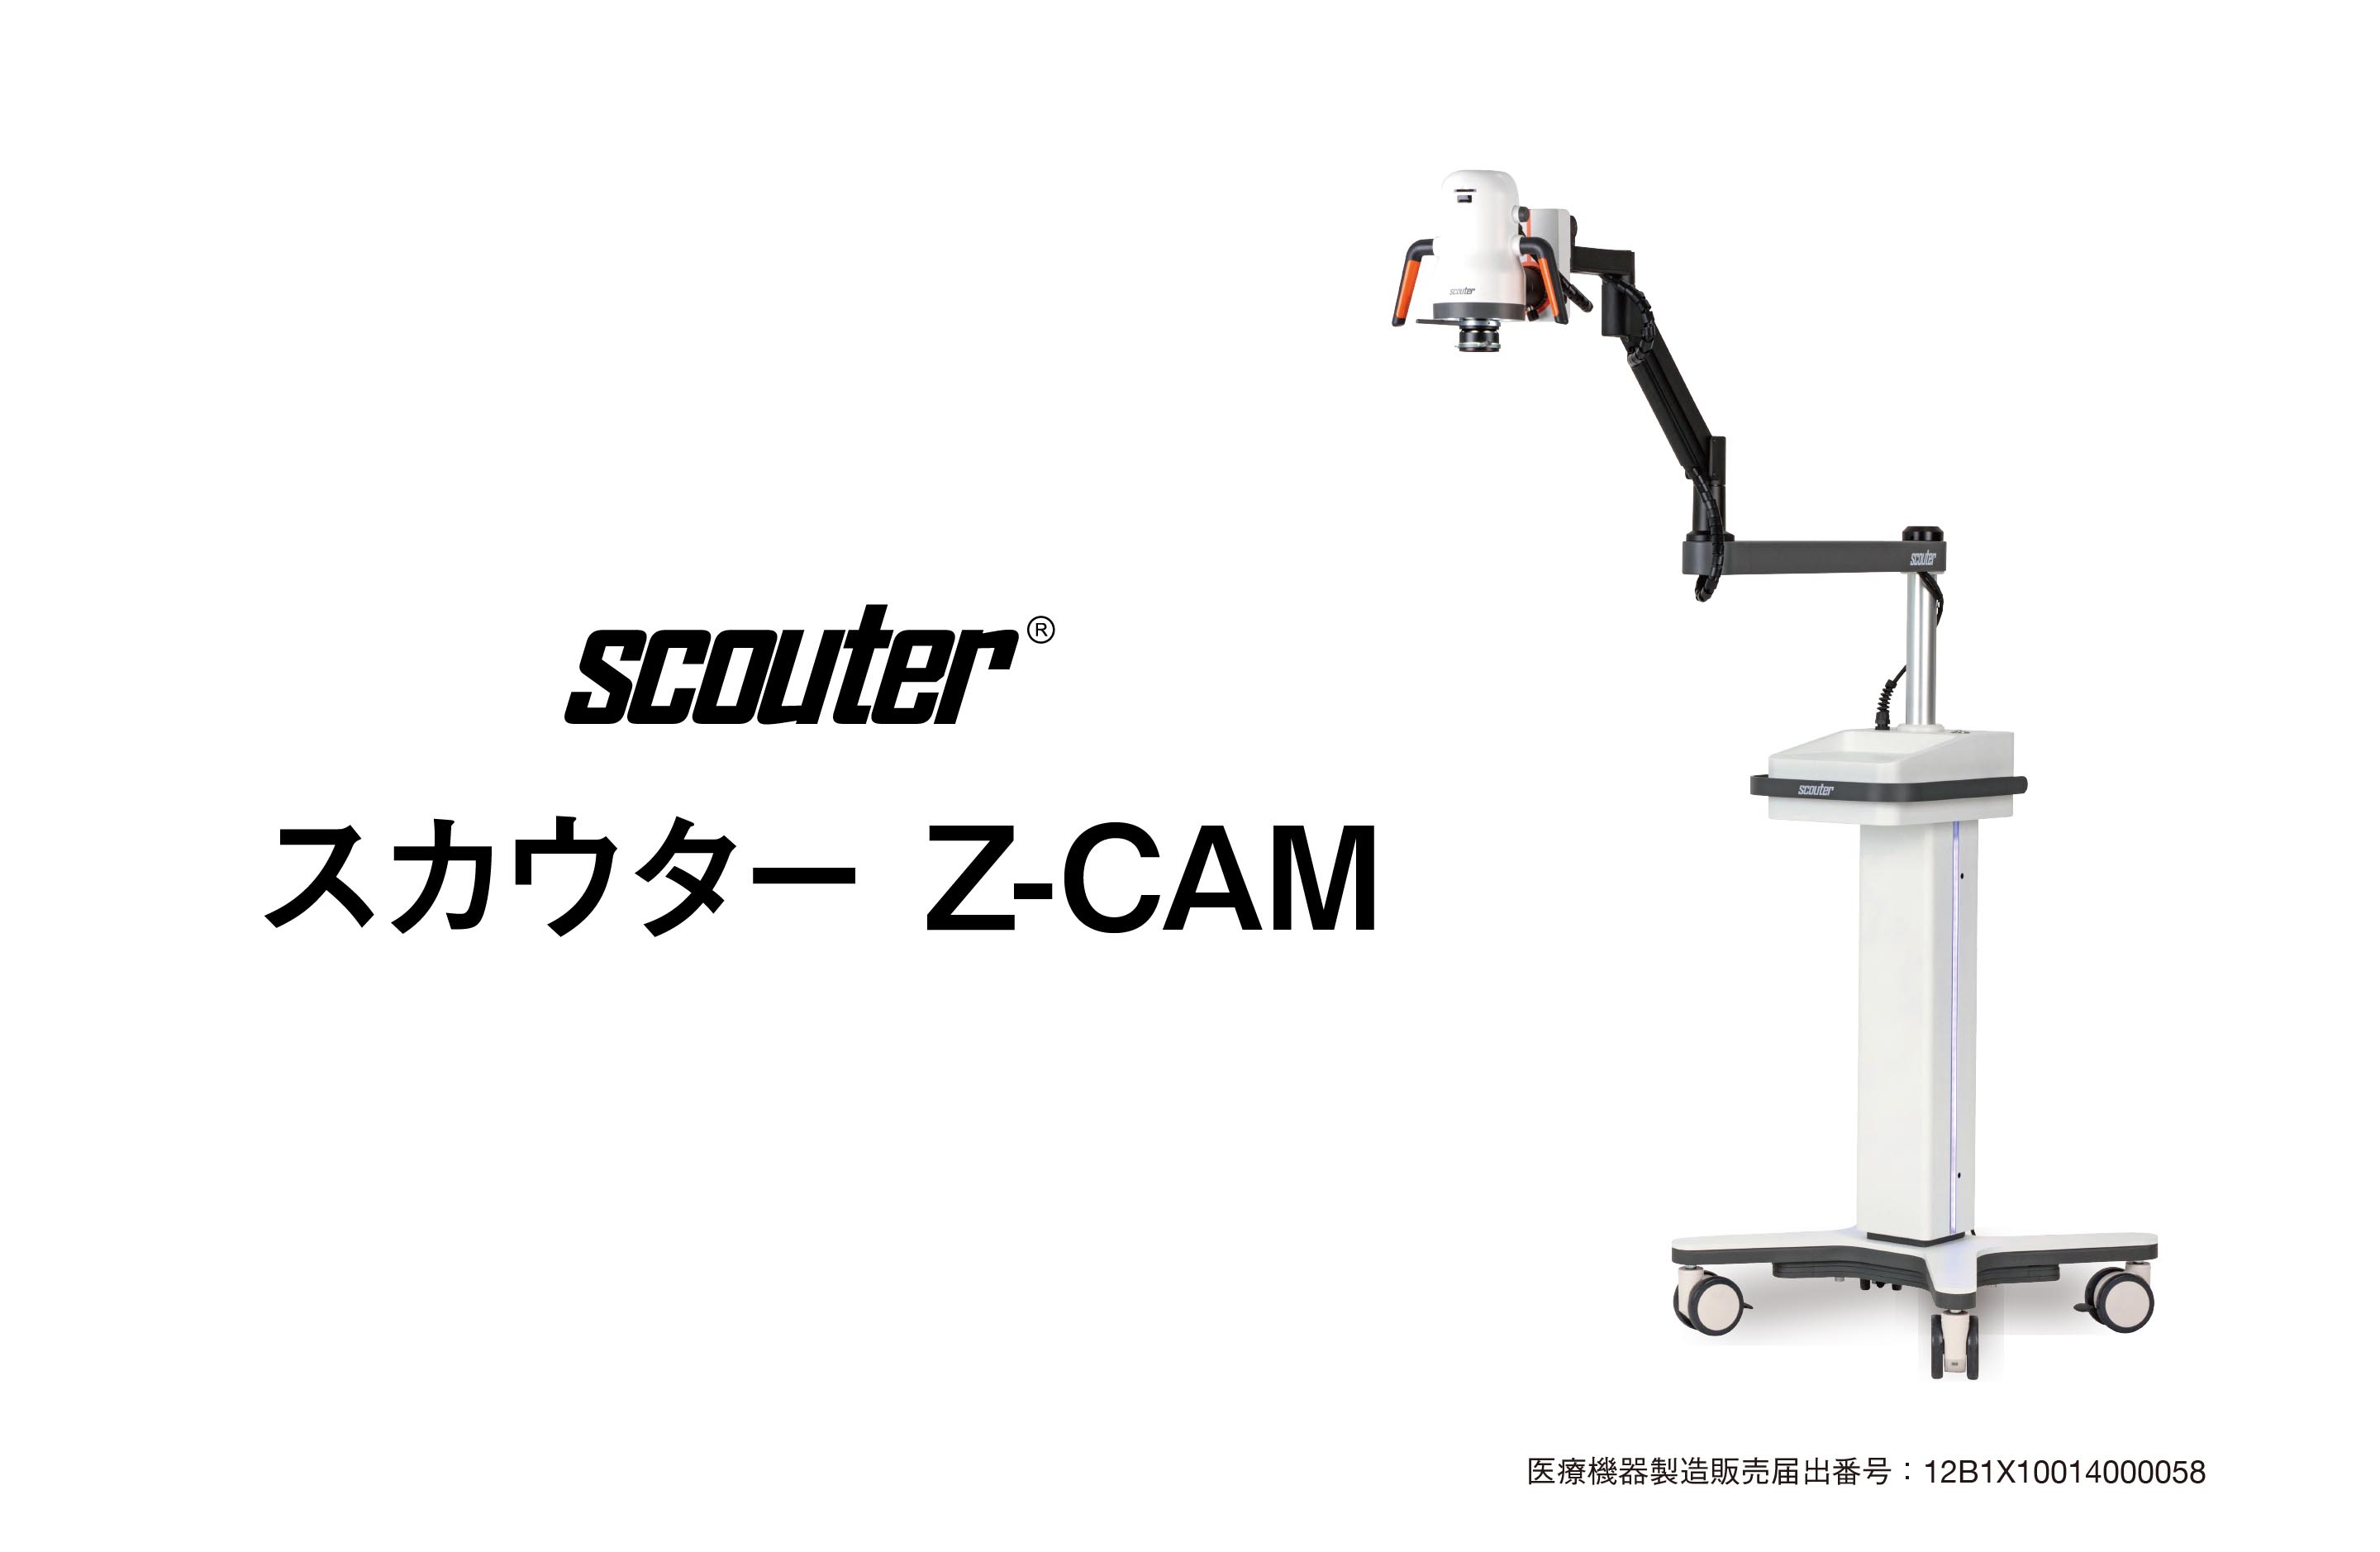 スカウター Z-CAM